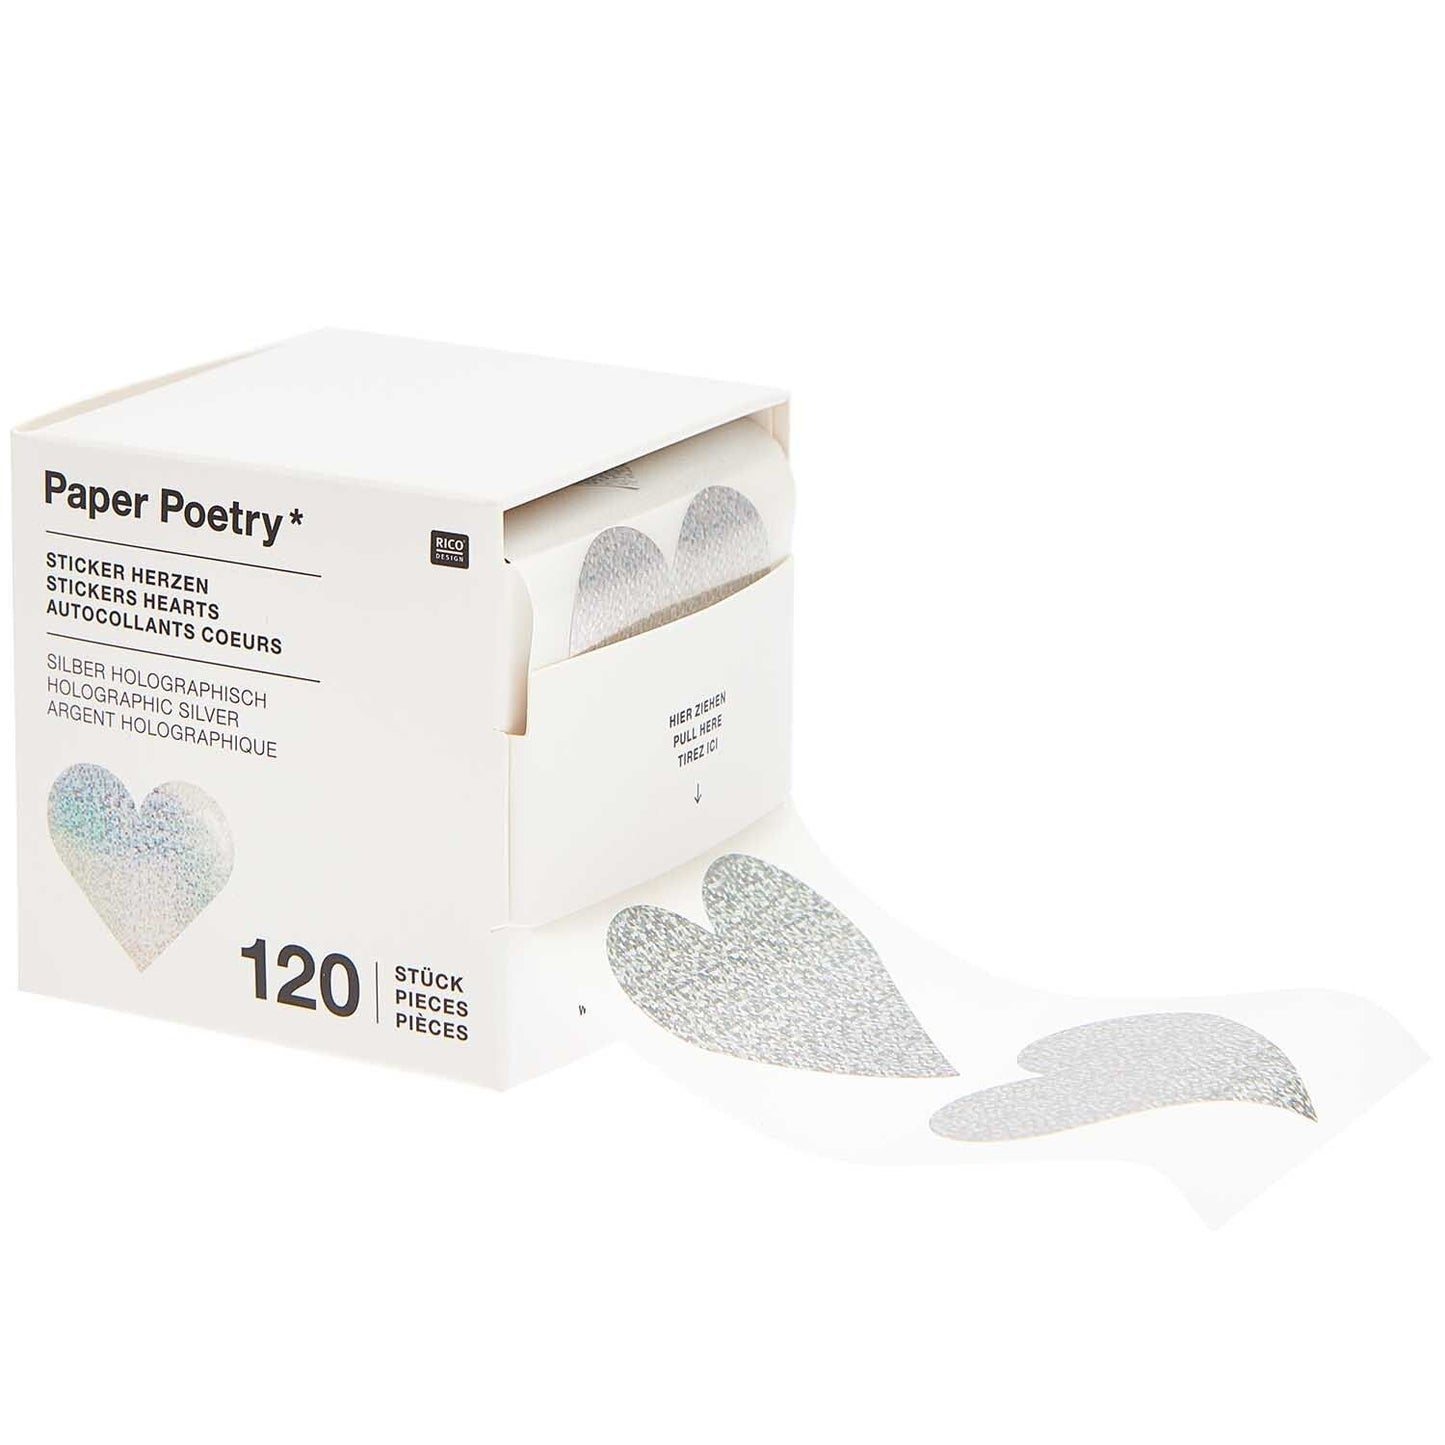 Paper Poetry, 120 Sticker HERZEN Silber Holographisch von Rico Design